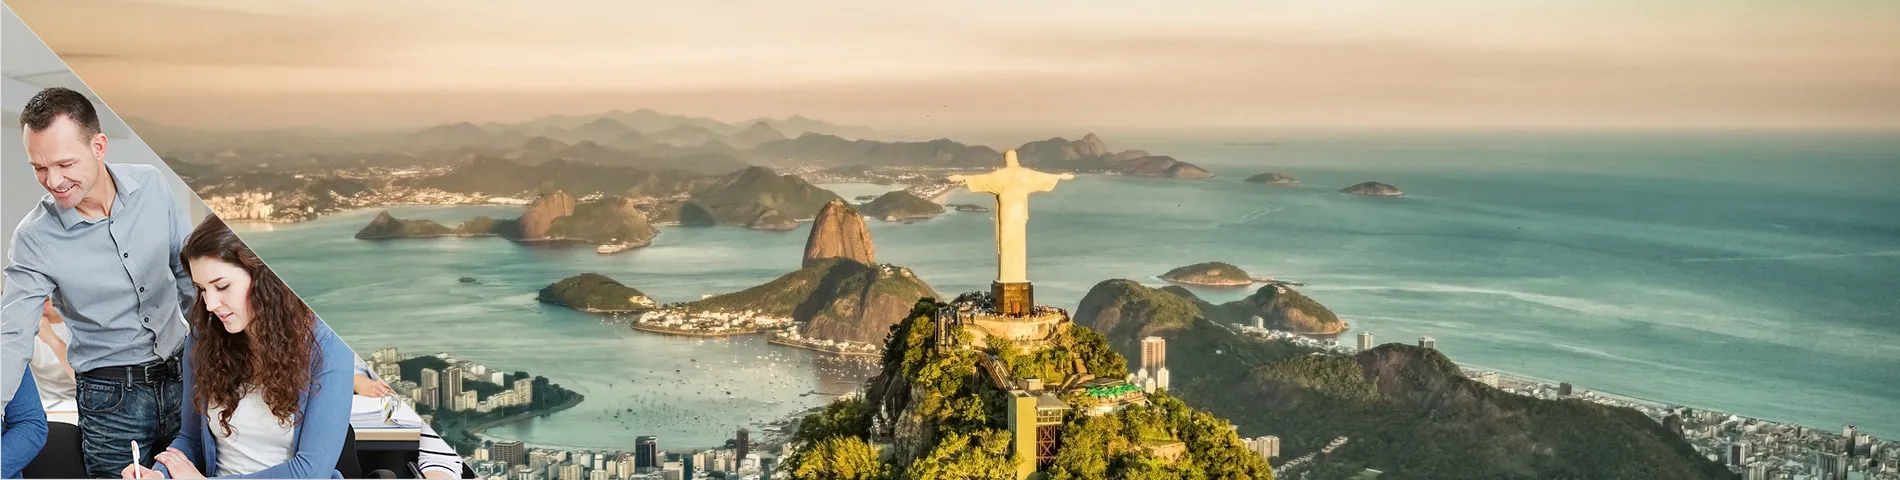 Rio de Janeiro - Yhdistetty: ryhmä + yksilö